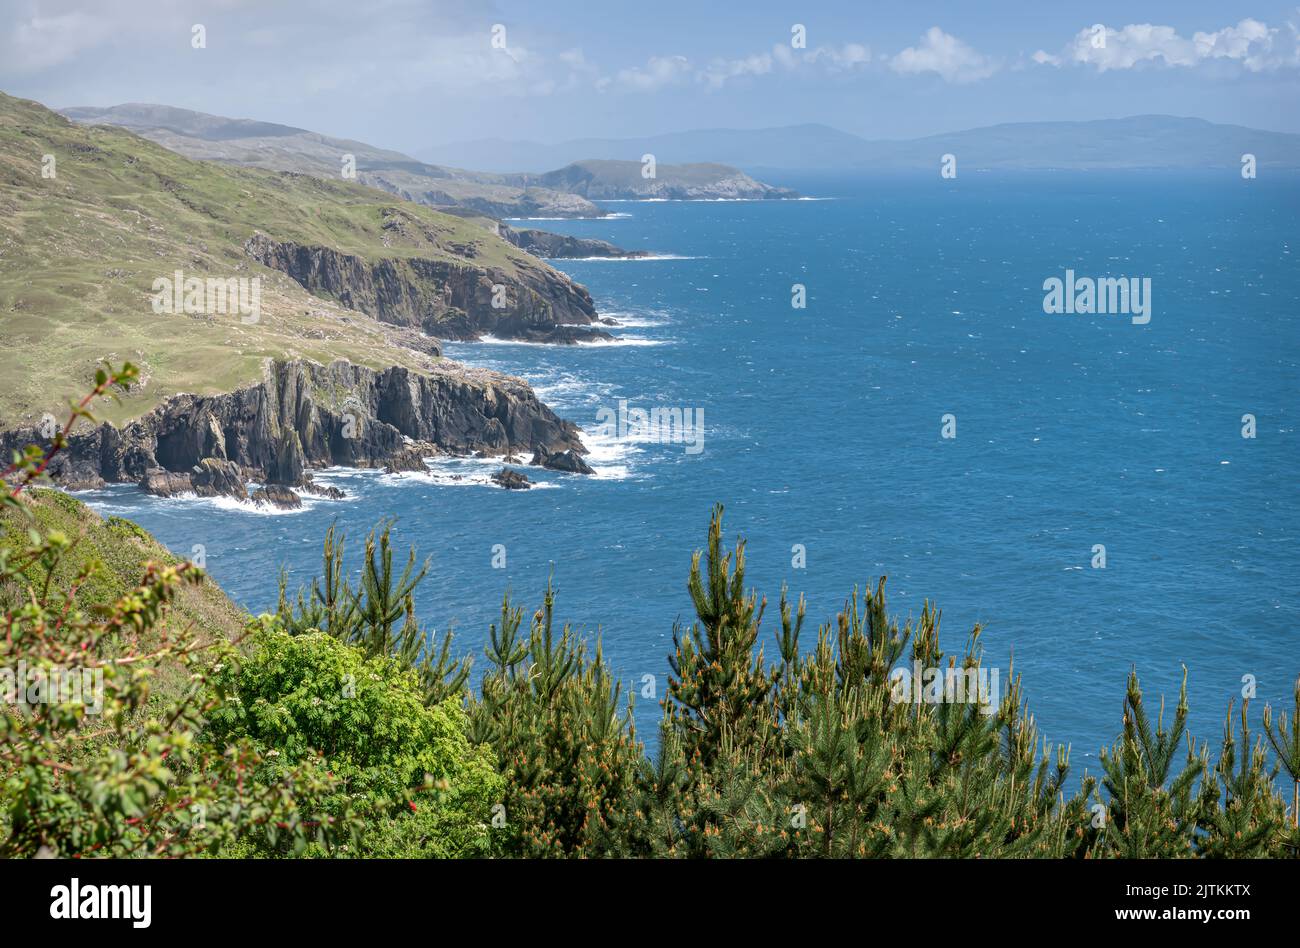 The South Coast of the Beara Peninsula Coast Line from Dzogchen in County Cork, Ireland Stock Photo